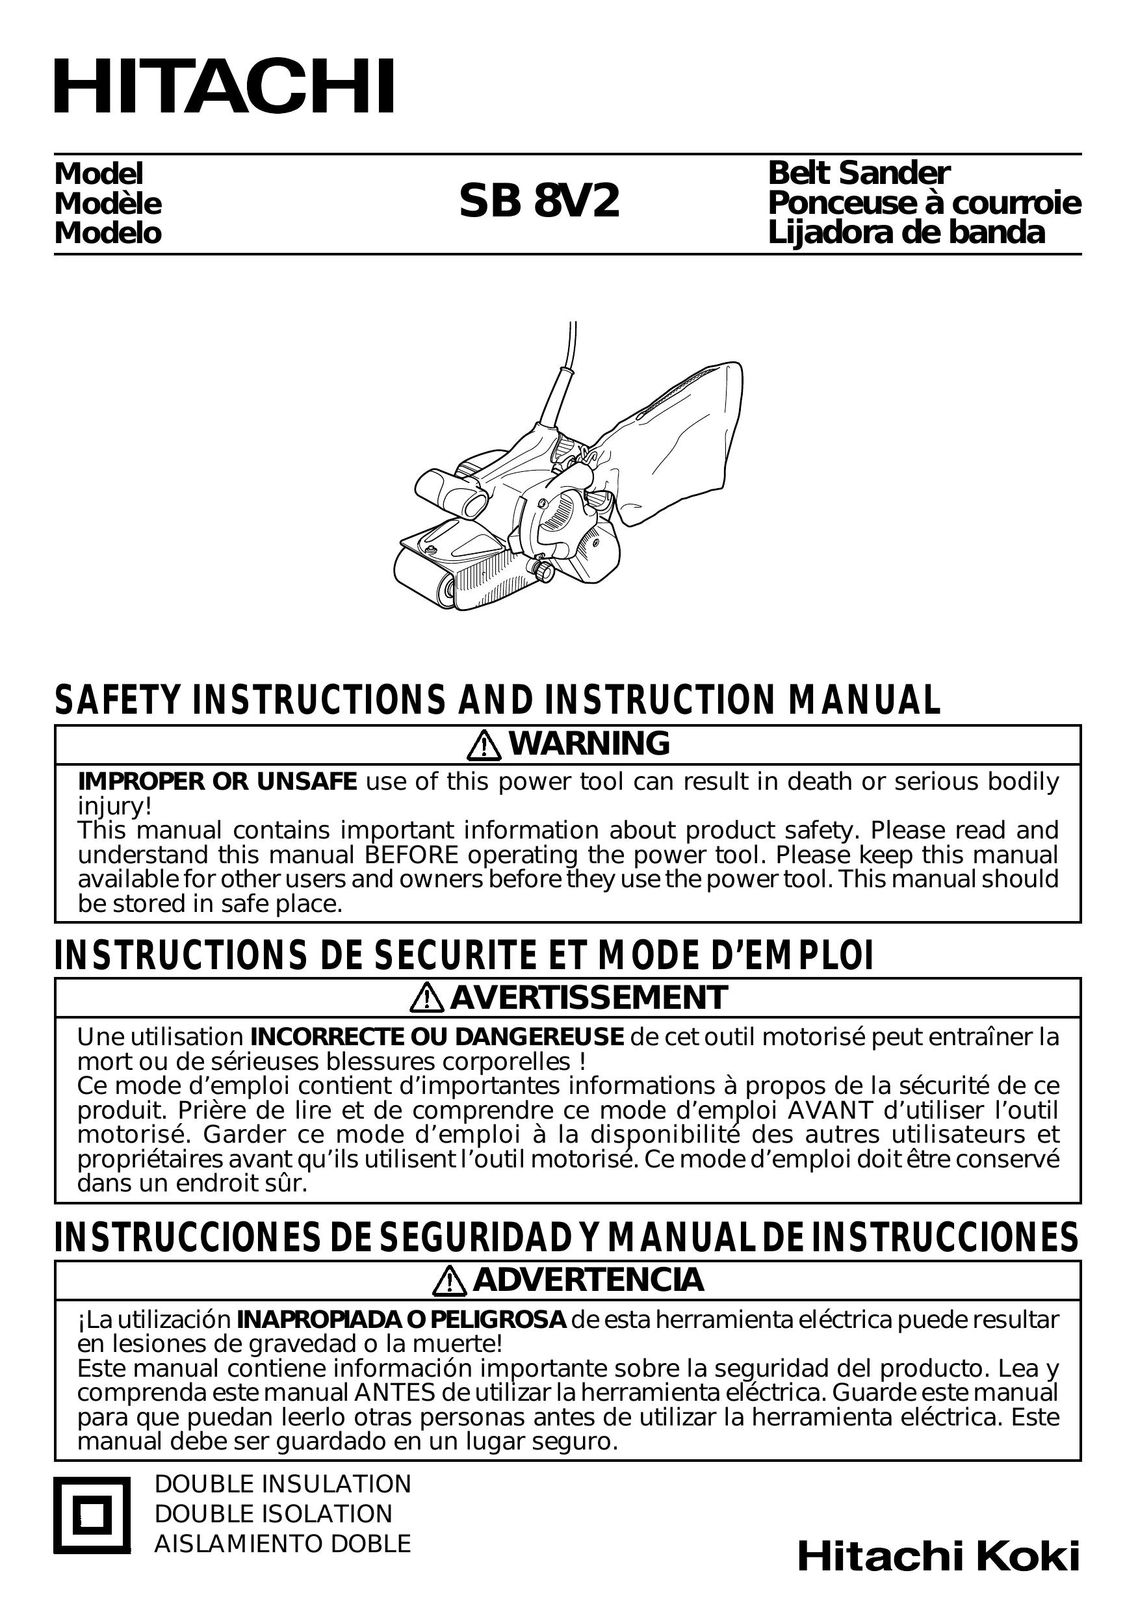 Hitachi SB 8V2 Sander User Manual